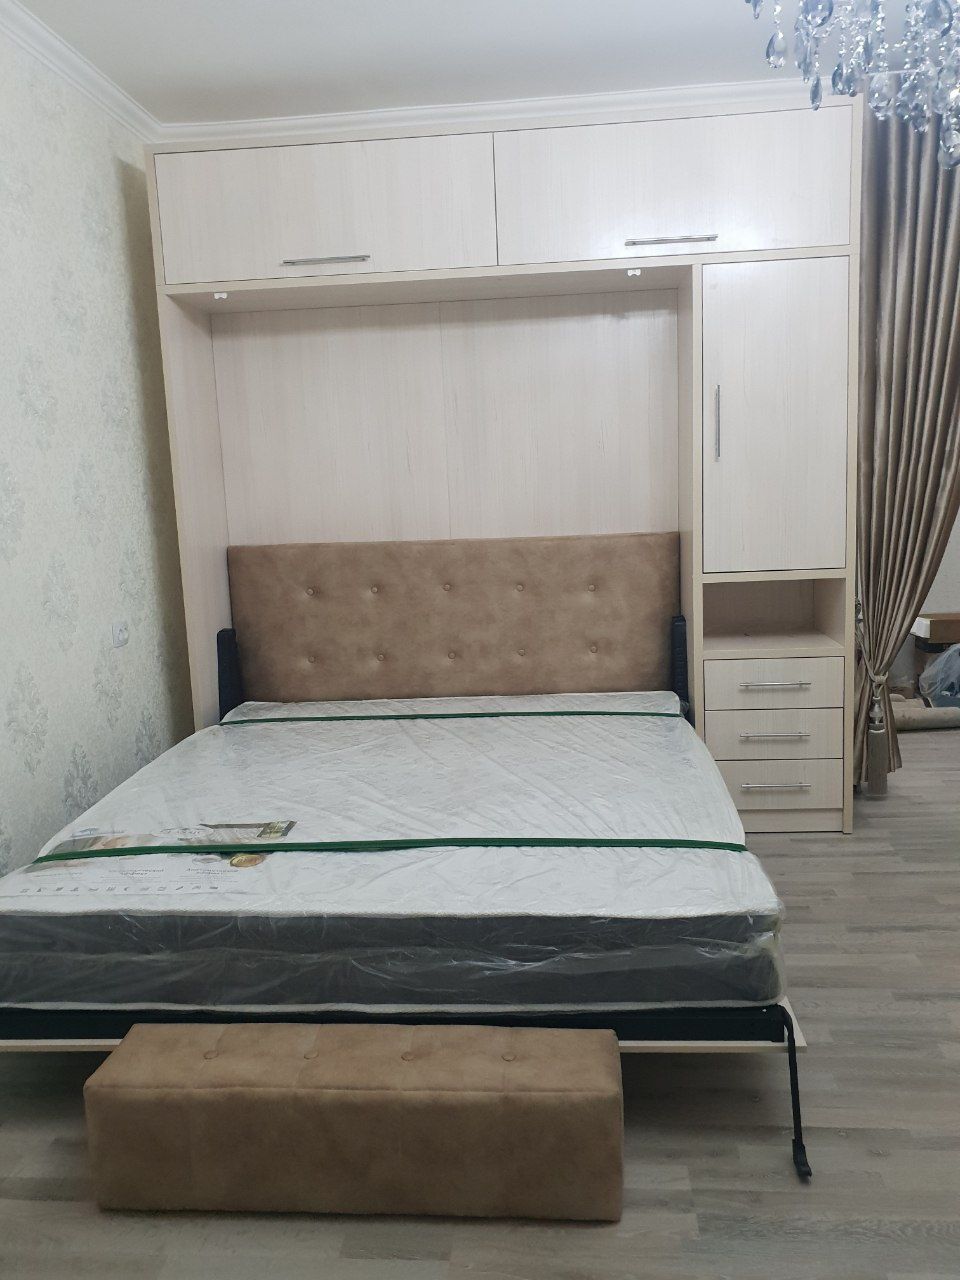 Кровать-диван трансформер двуспальная, купить в Москве недорого диван-кровать двухместный, цены